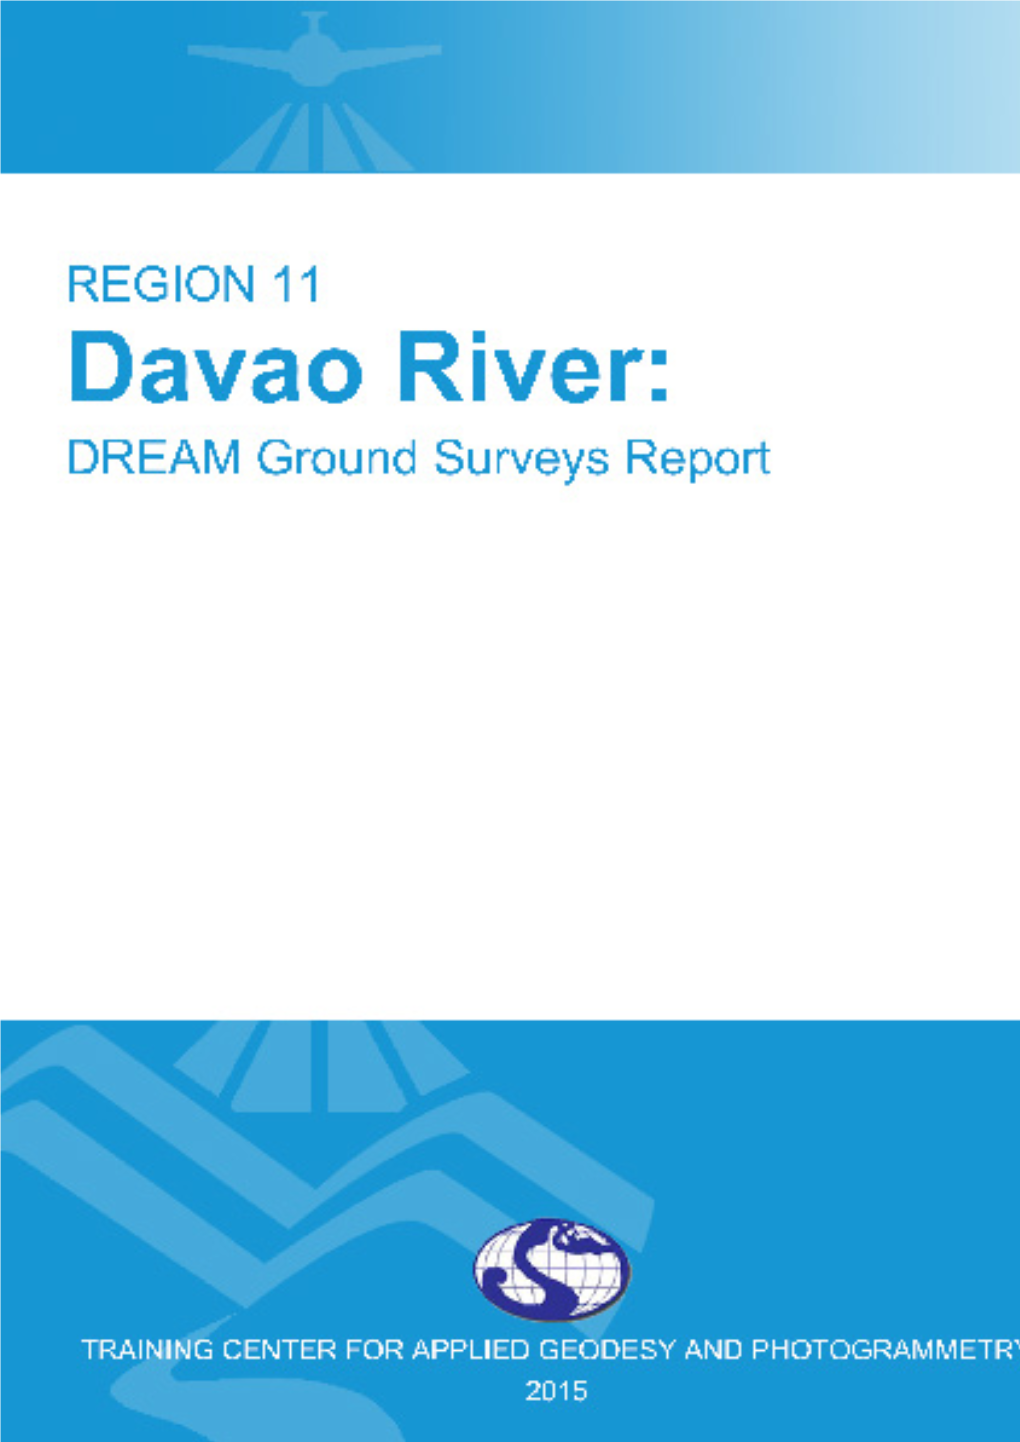 DREAM Ground Surveys for Davao River